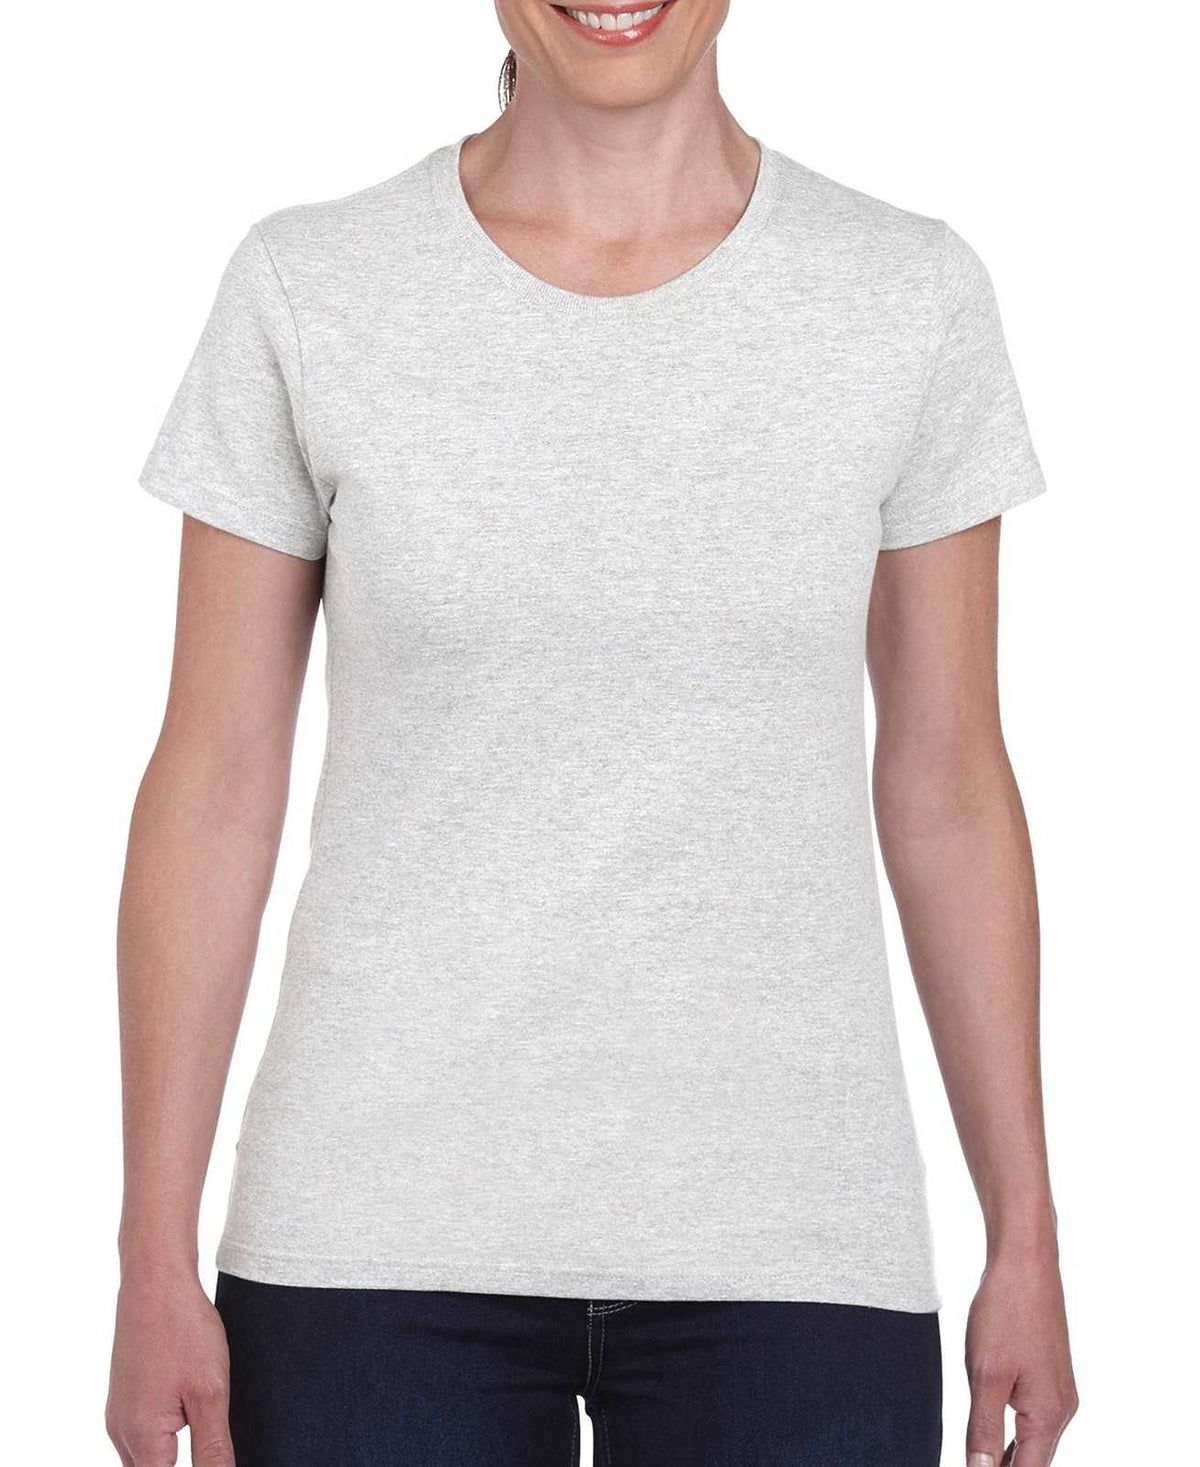 Gildan 5000L Ladies Heavy Cotton 100% Cotton T-Shirt - Ash Grey - HIT a Double